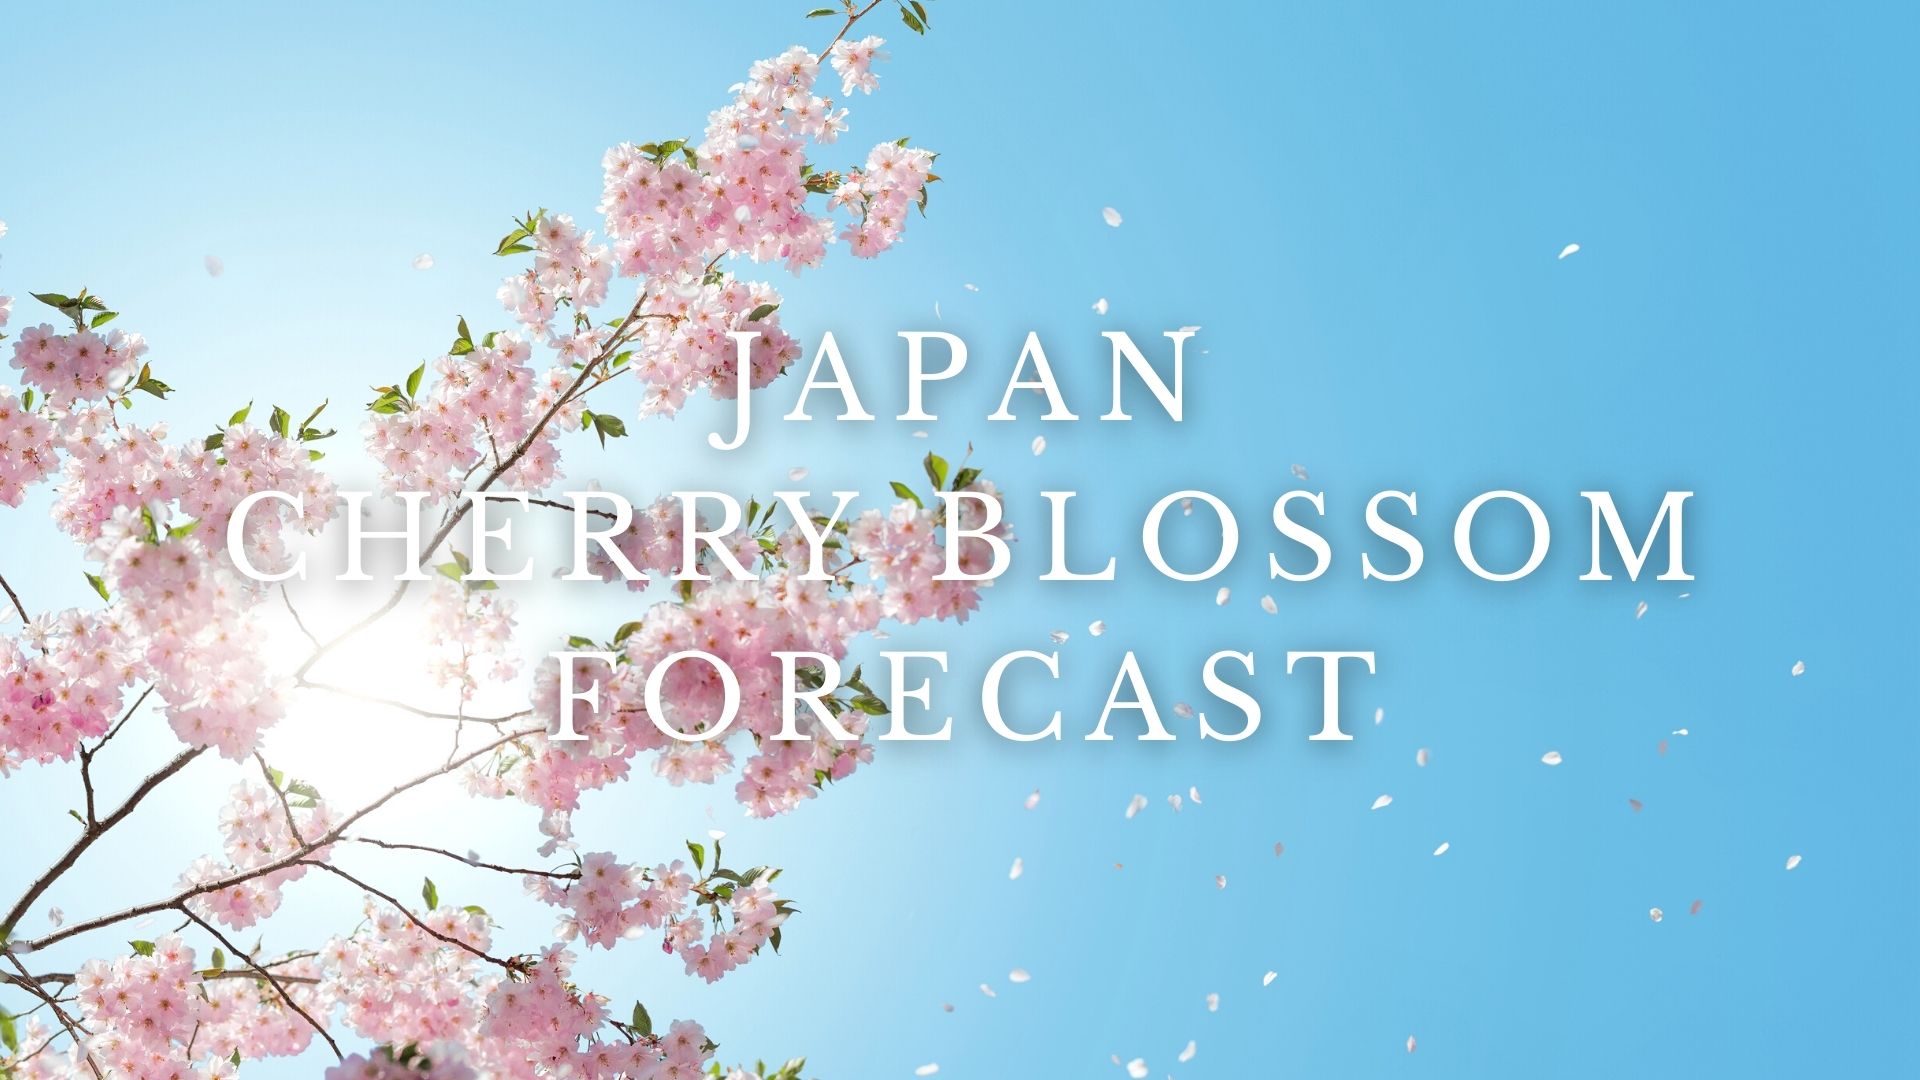 Japan Cherry Blossom Forecast